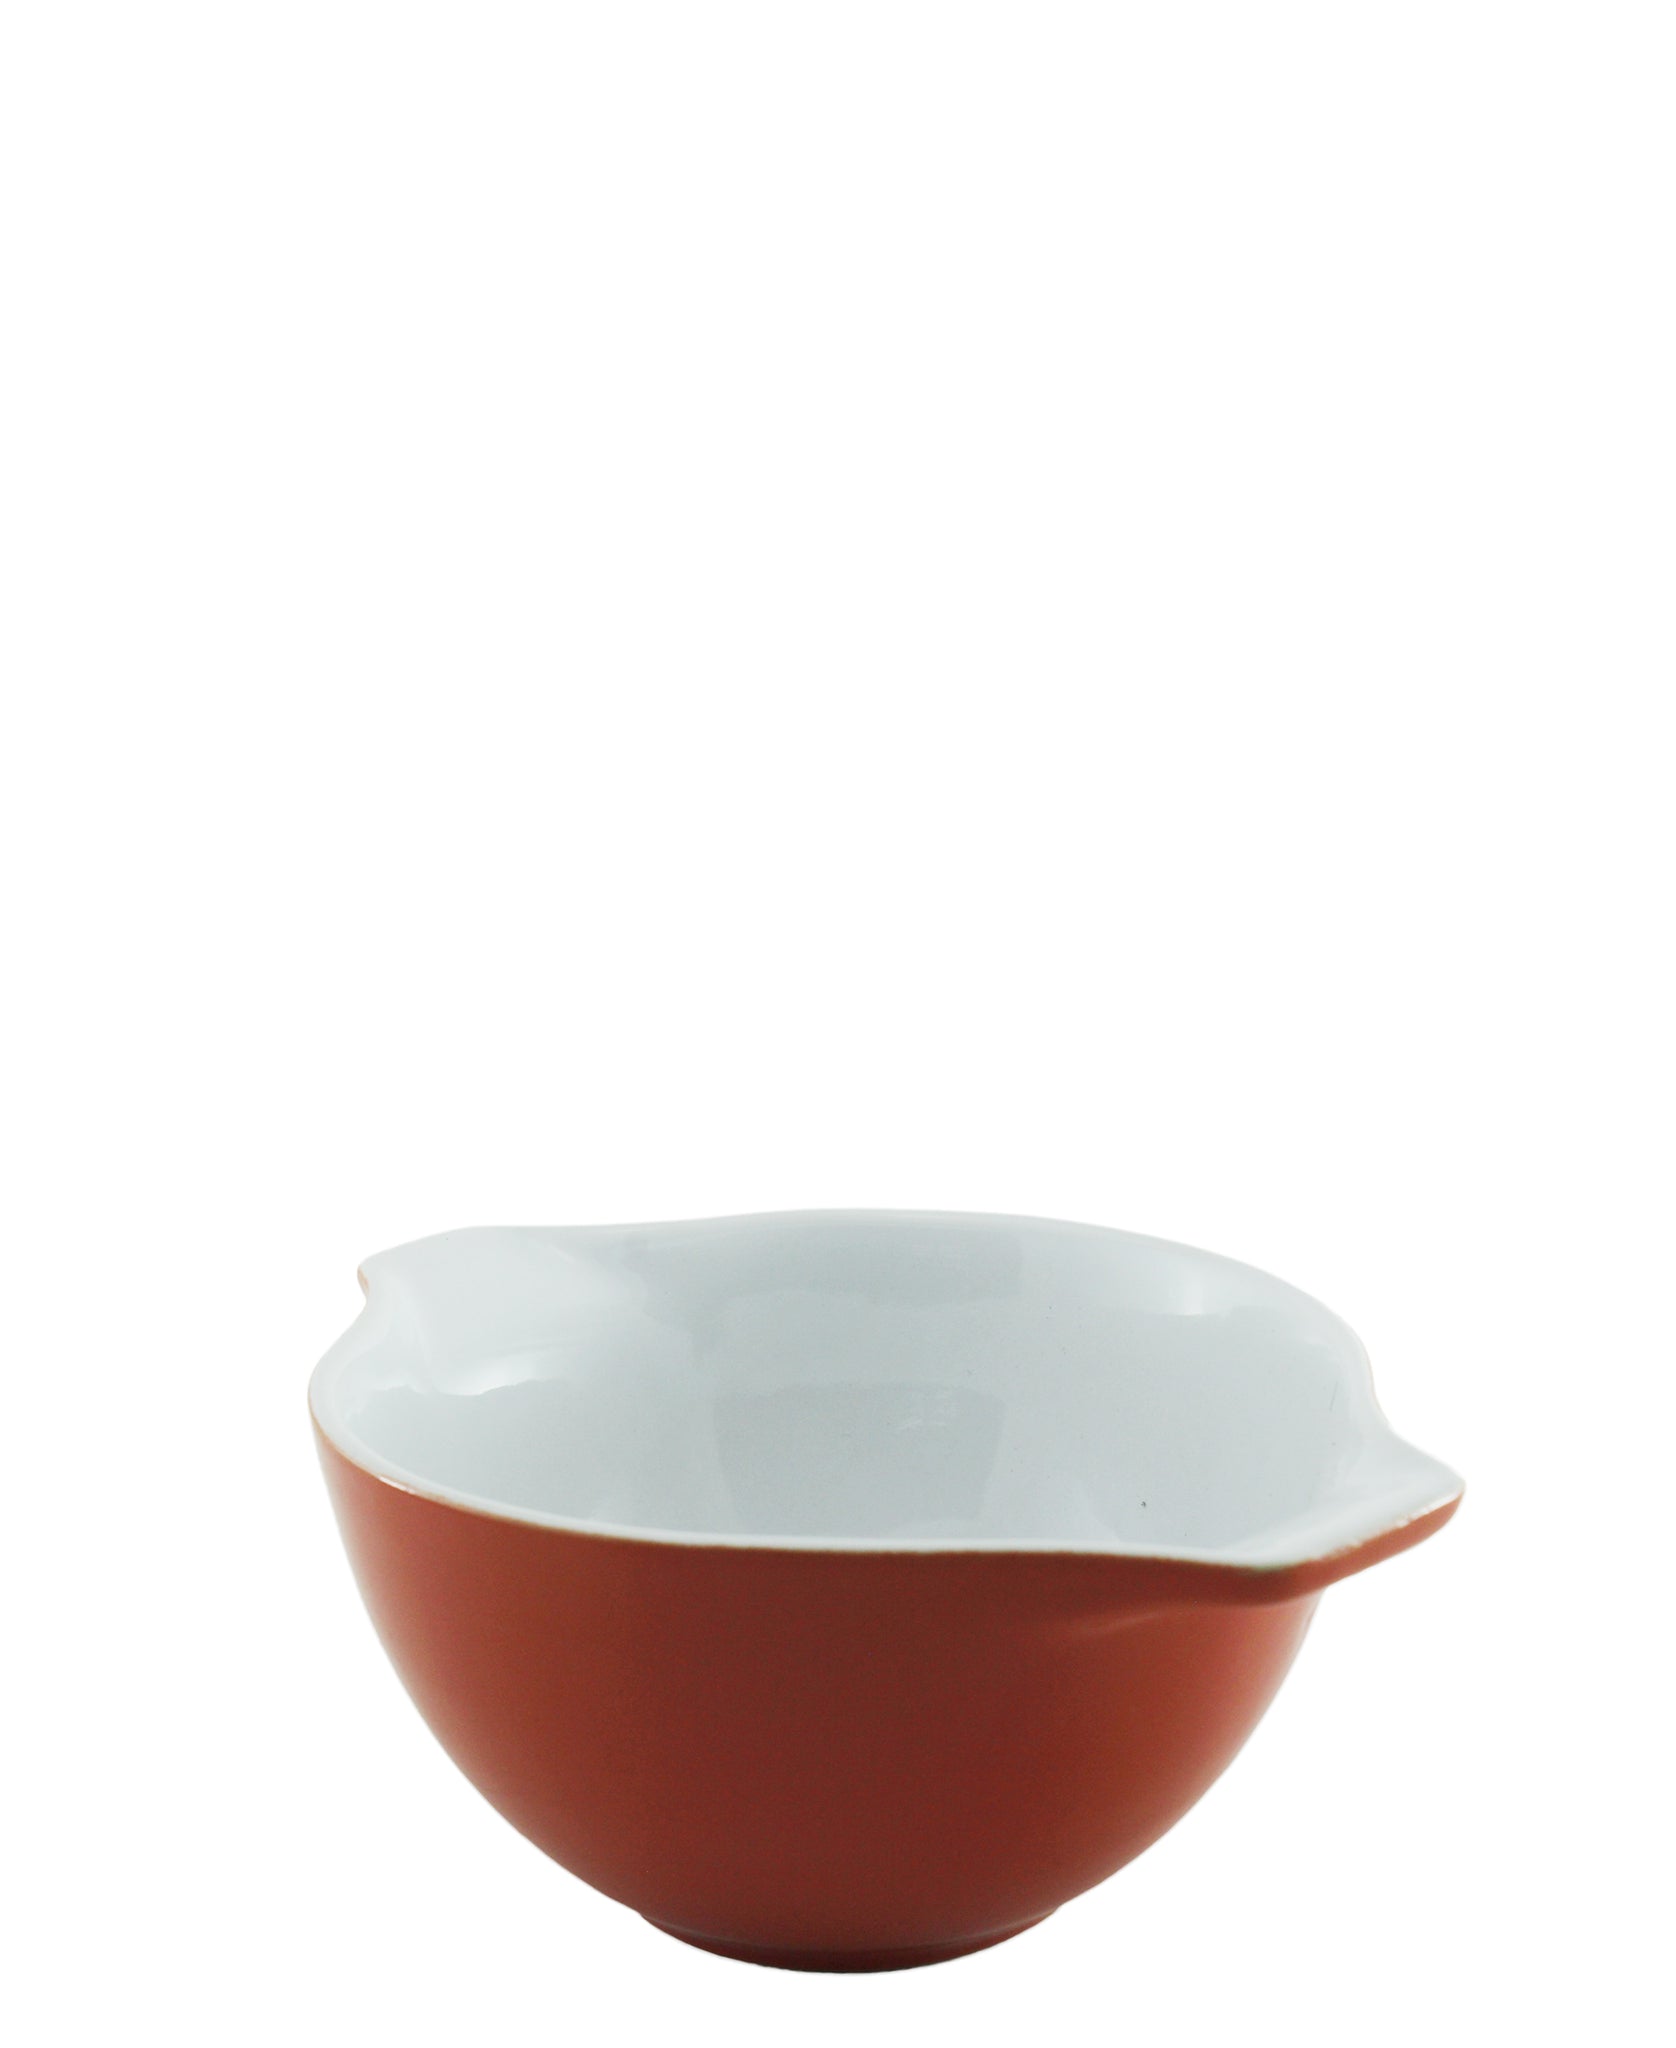 Pyrex Cinderella Ceramic Bowl 500ml - Red